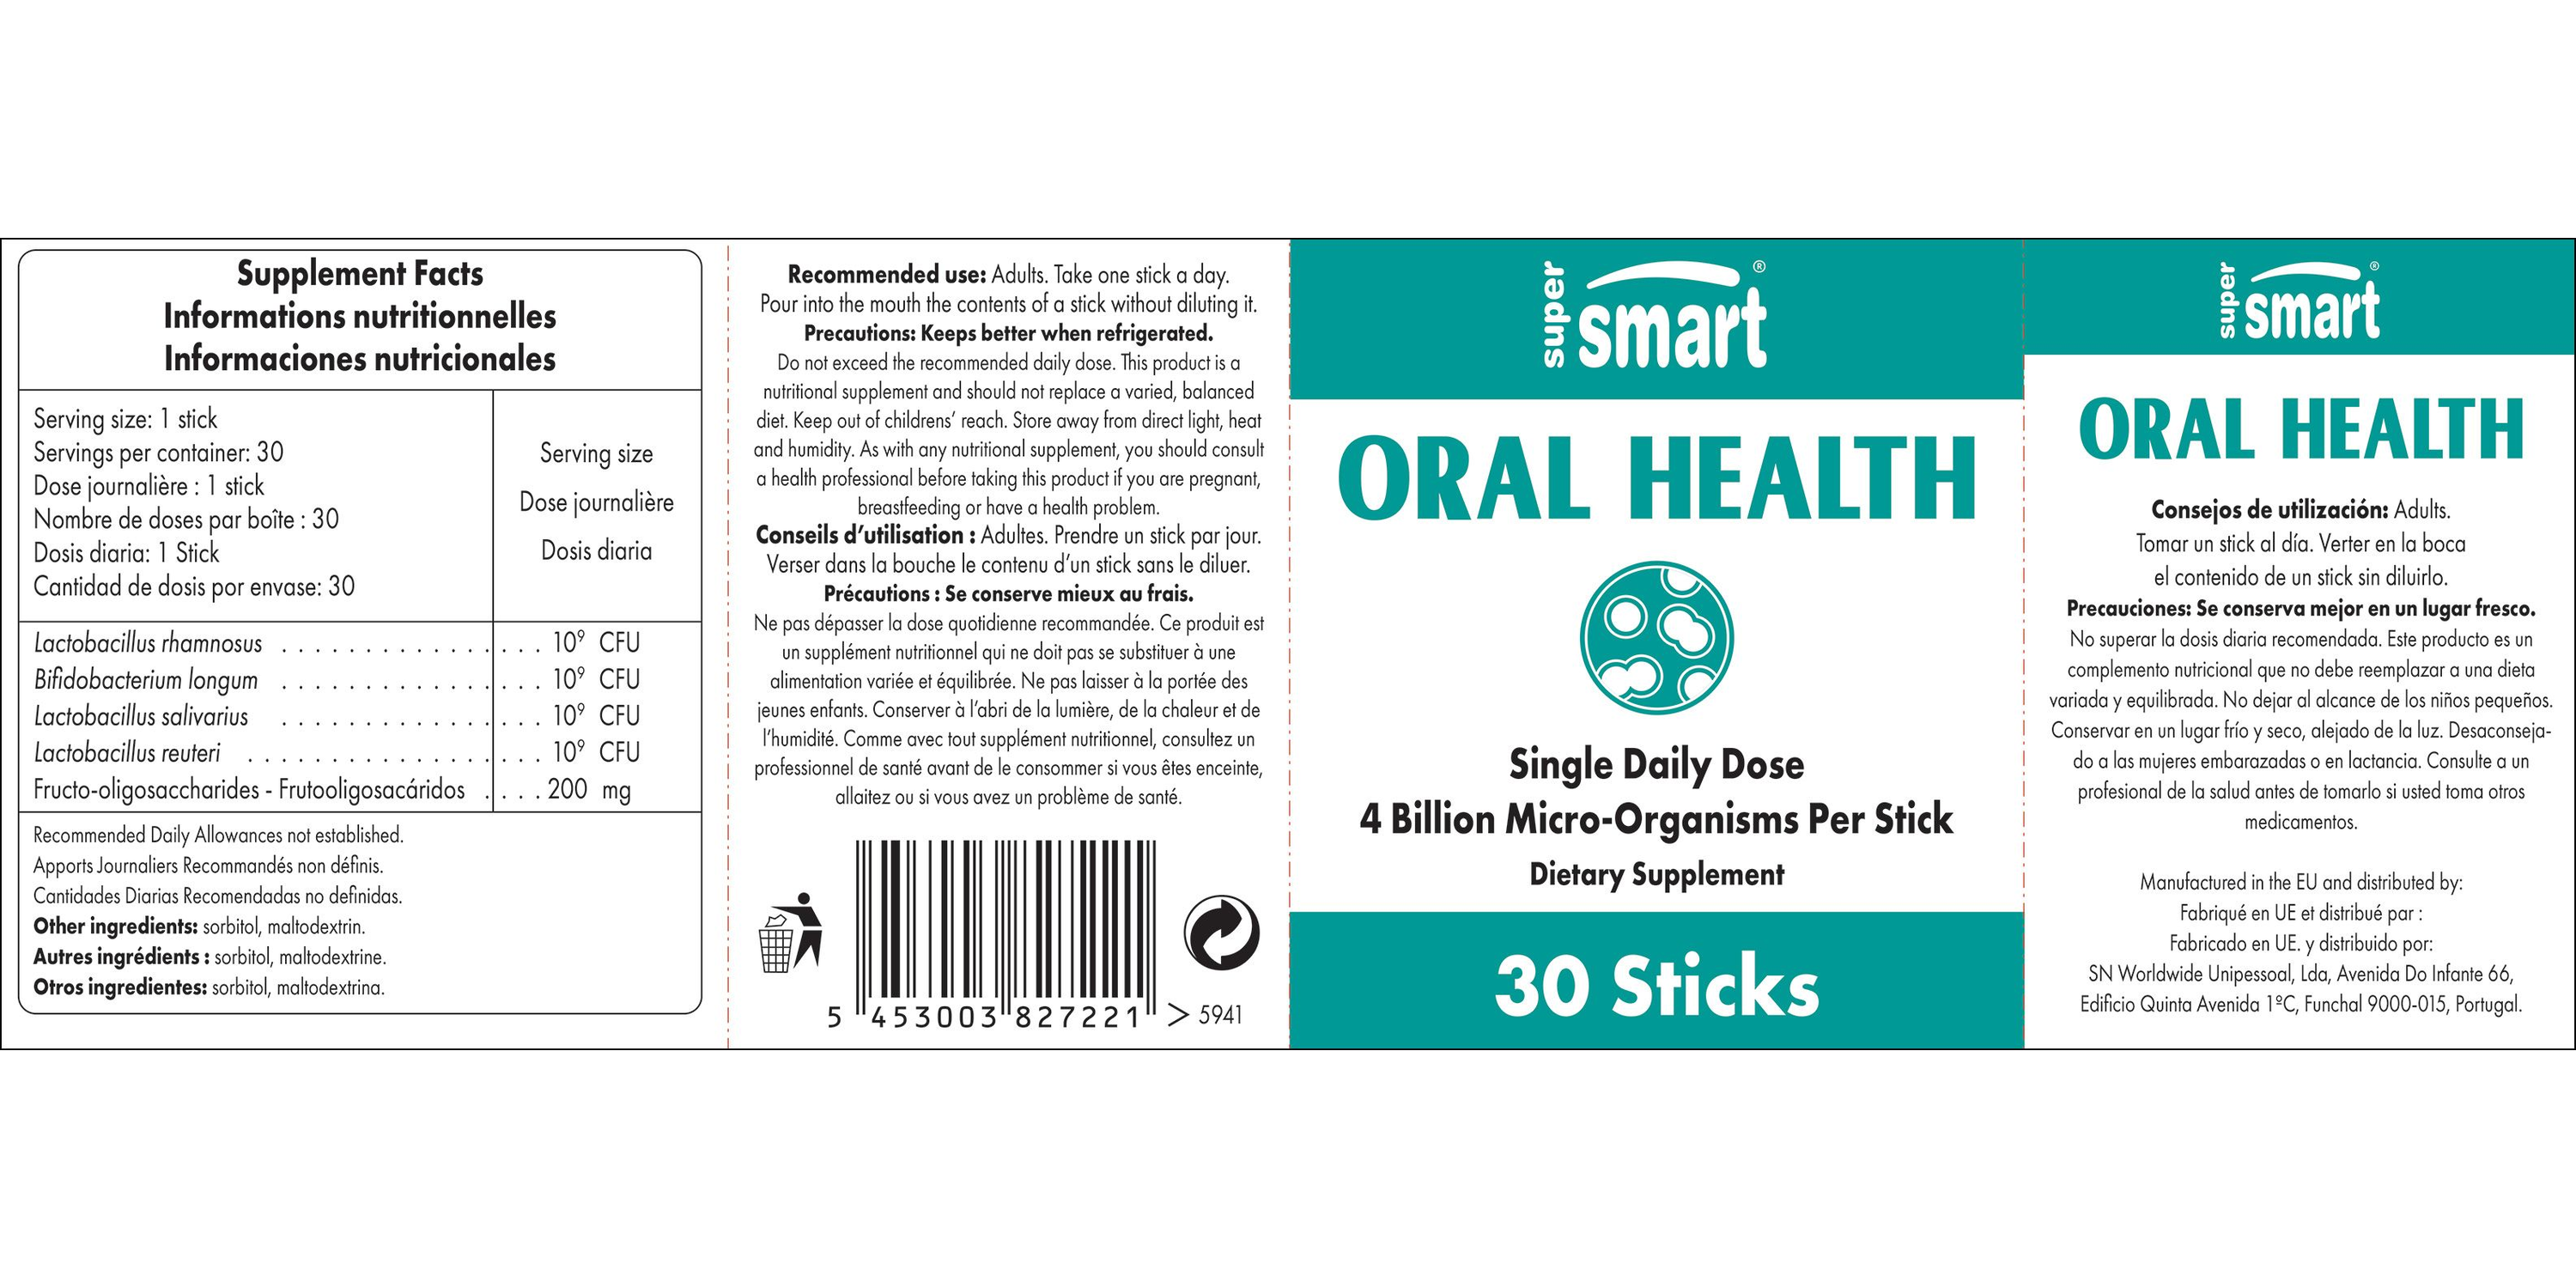 Oral Health Supplement